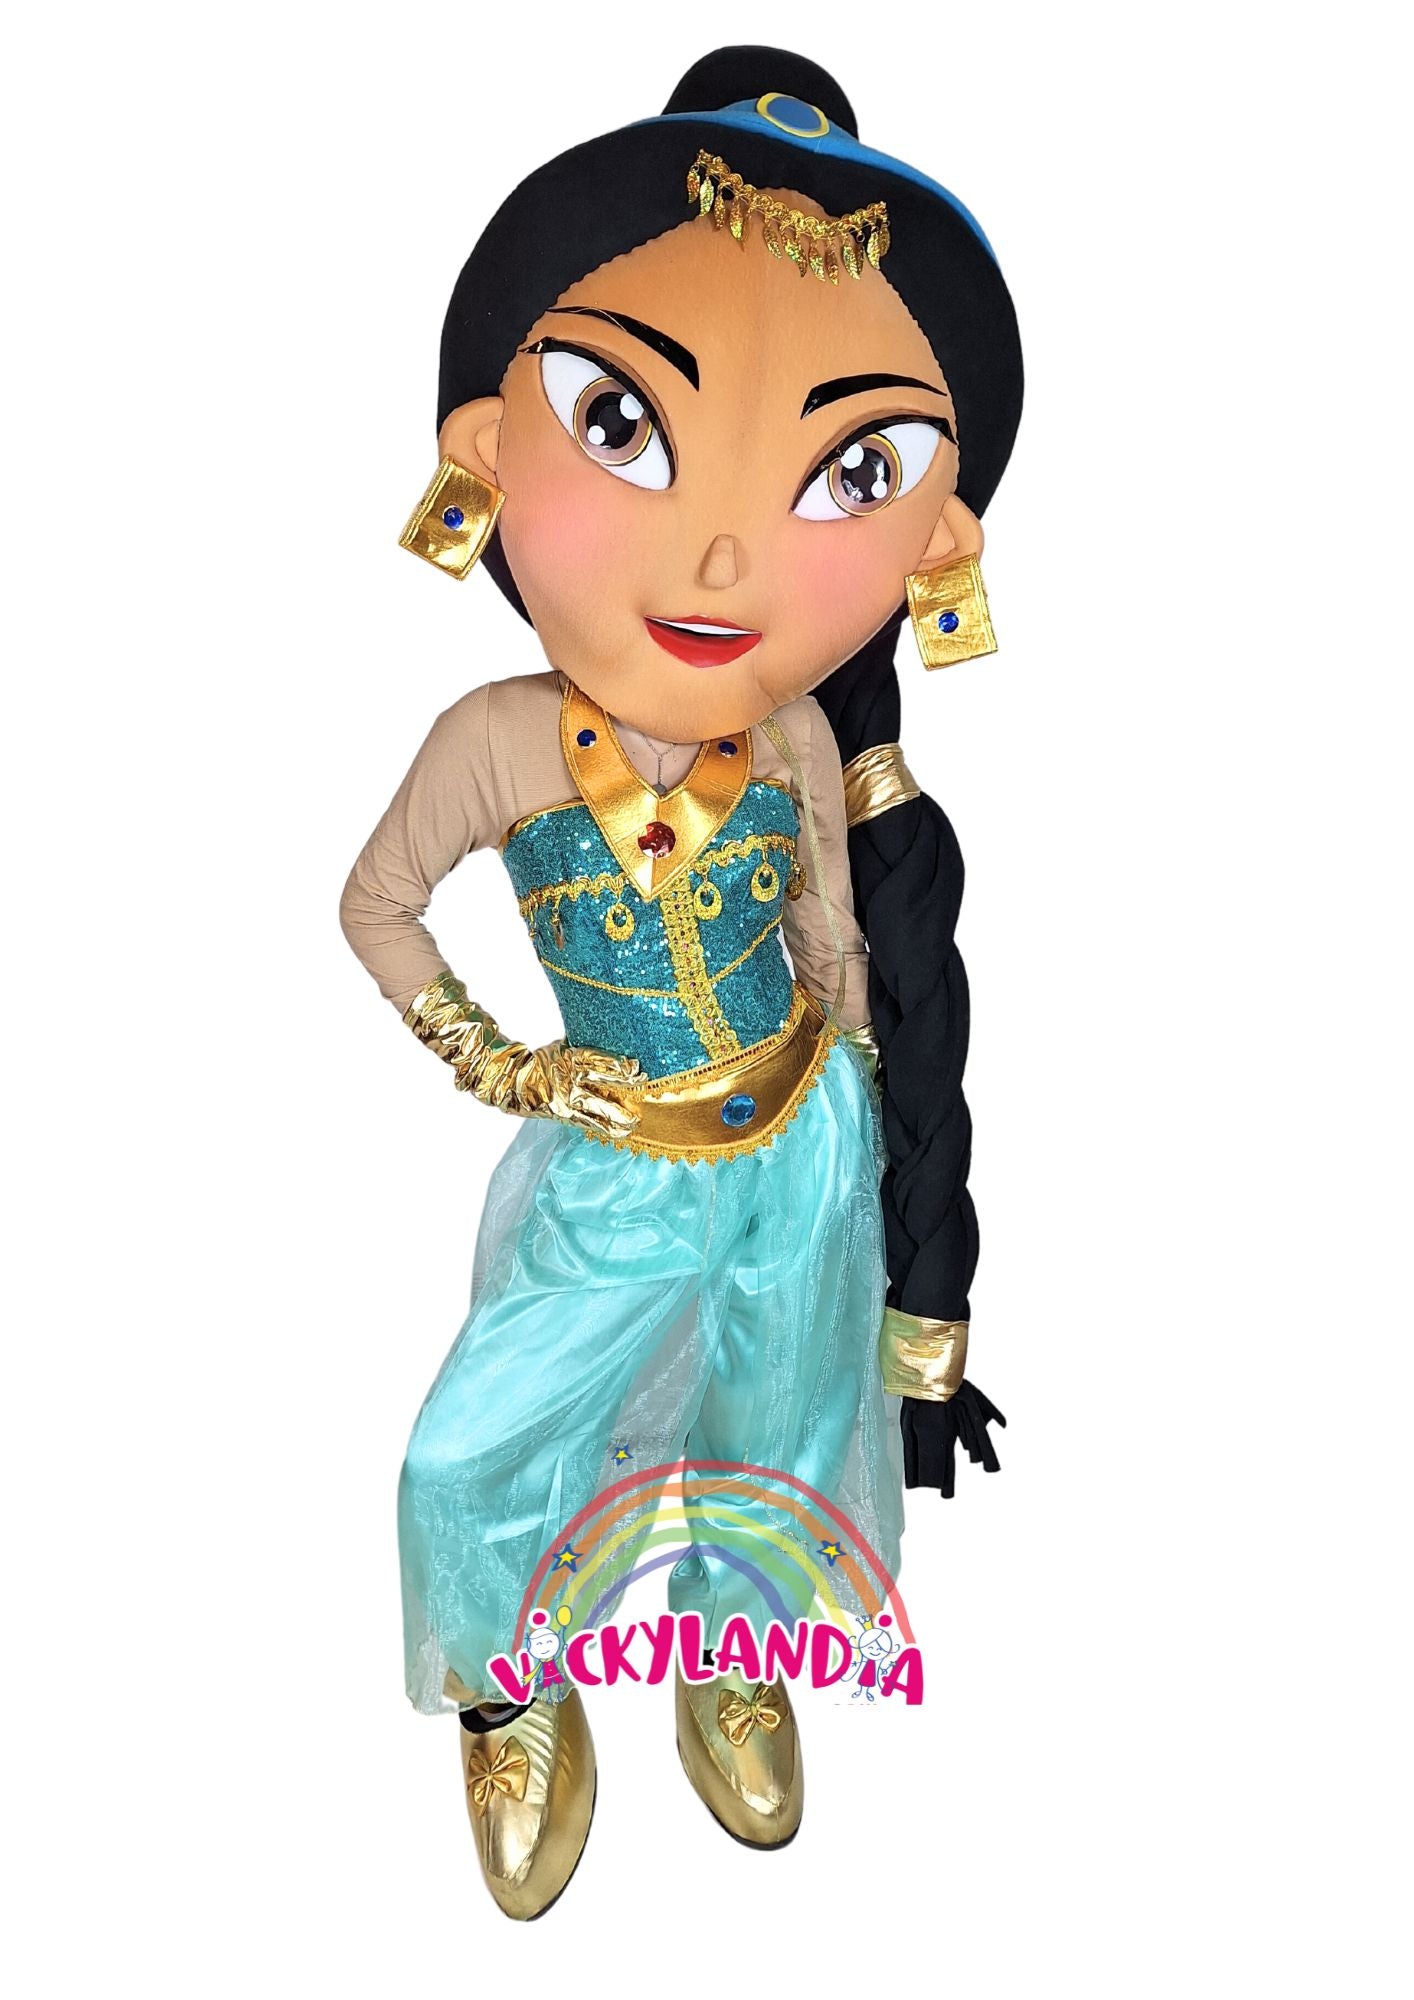 Descubre la magia de nuestro muñeco publicitario de Princesa Aventurera en Vickylandia. Son disfraces cabezones perfectos para fiestas infantiles, shows, cumpleaños, estrategias publicitarias, carnavales, fiestas patronales, espectáculos, cabalgatas y cualquier tipo de evento